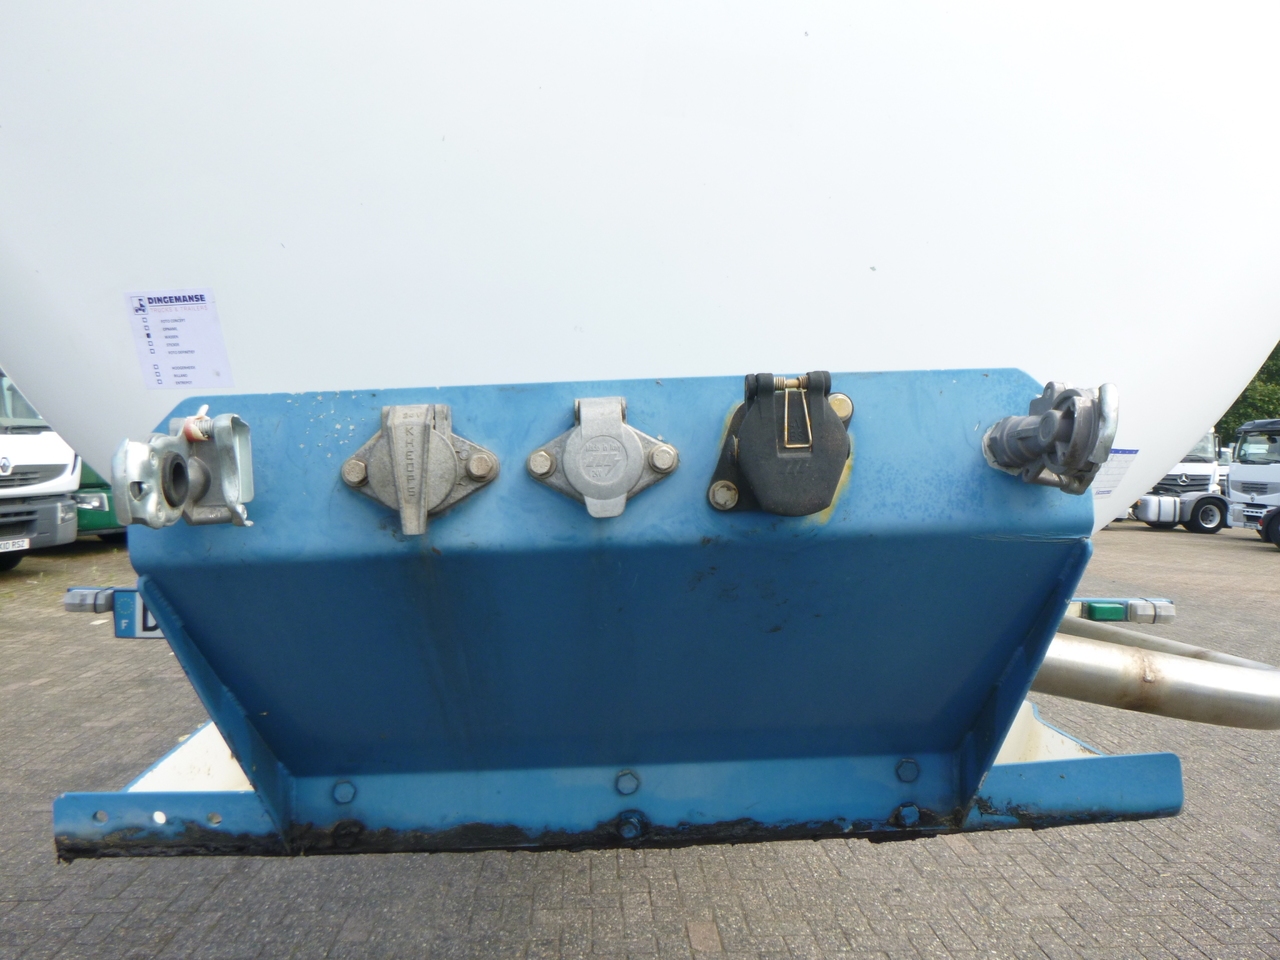 Cisterna semirremolque para transporte de gas Guhur Low-pressure gas tank steel 31.5 m3 / 10 bar (methyl chloride): foto 17